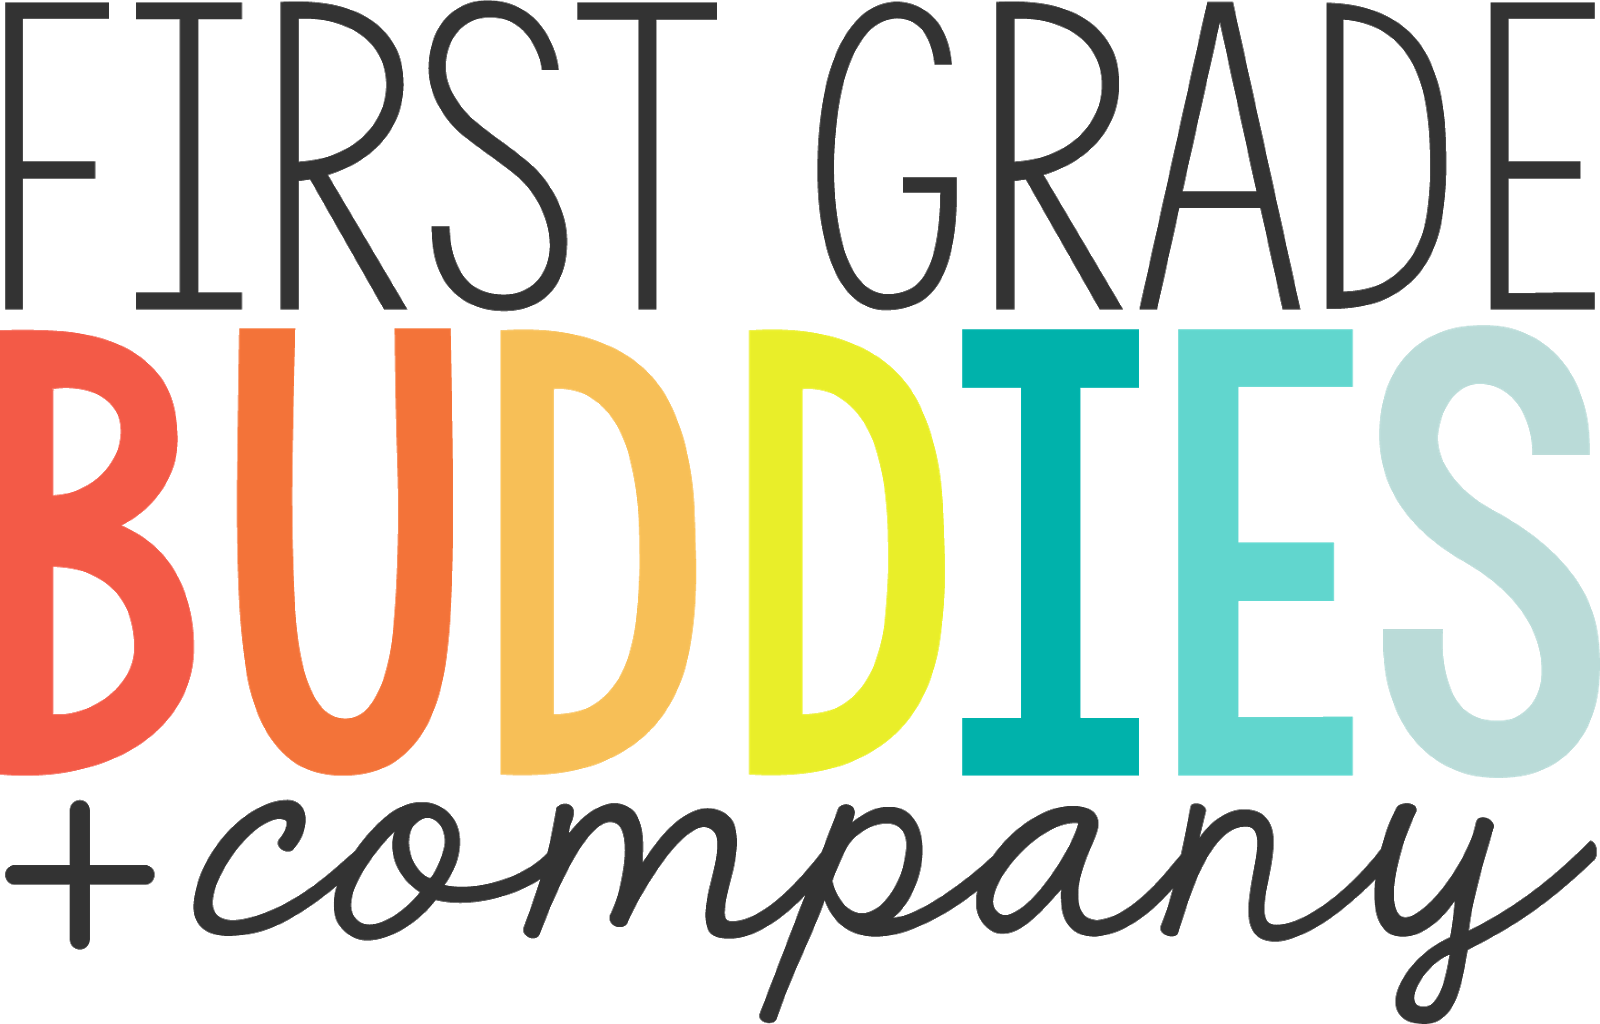 First Grade Buddies - First Grade Buddies (1600x1024)